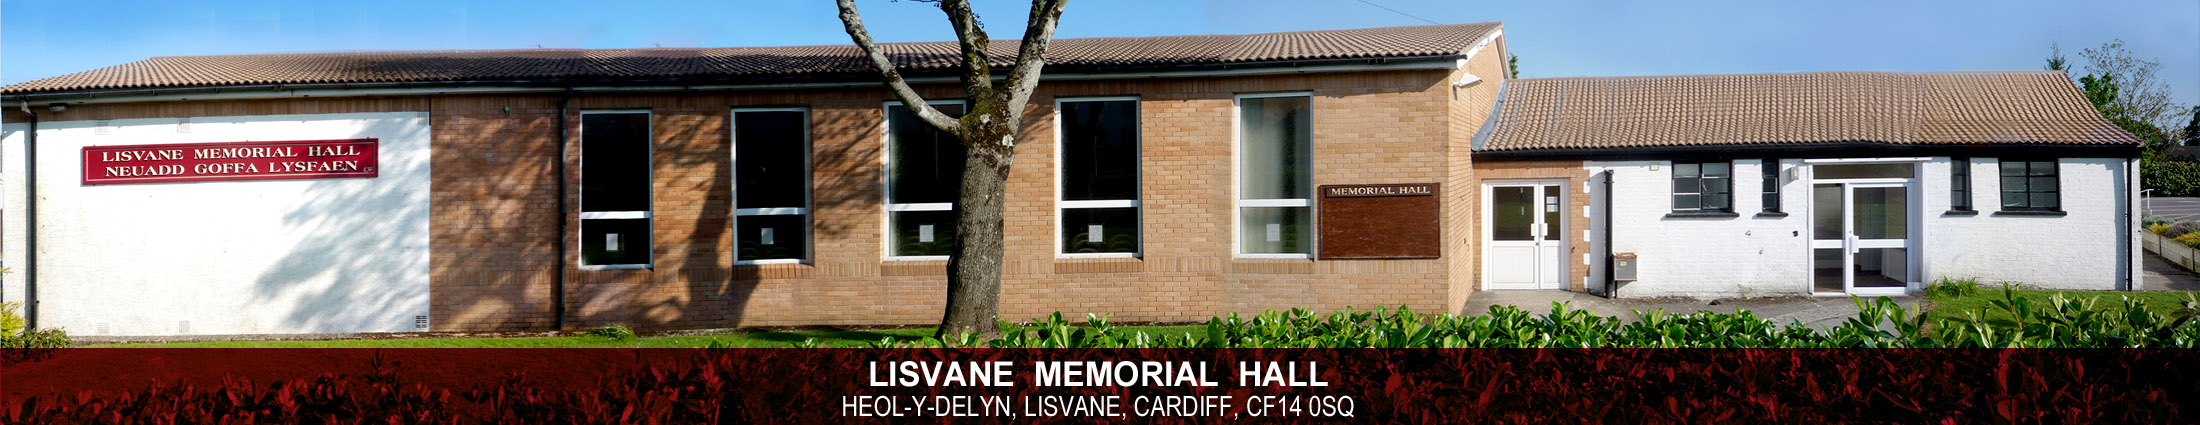 Header Image for Lisvane Memorial Hall